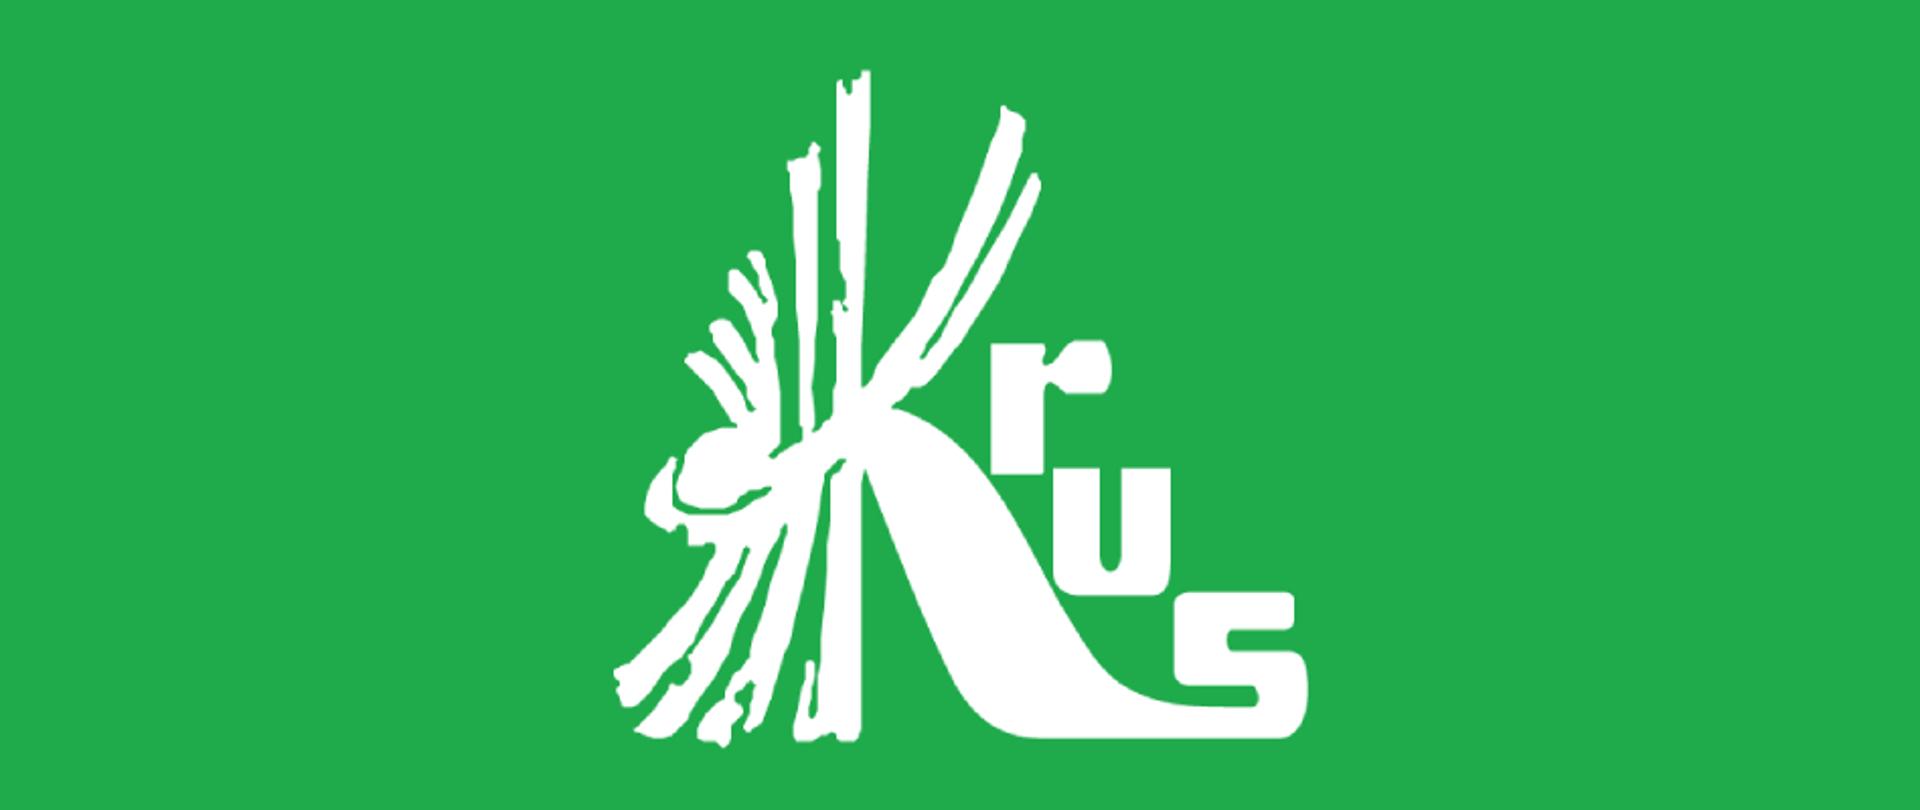 Białe Logo na zielonym tle, kombinacja liter KRUS.